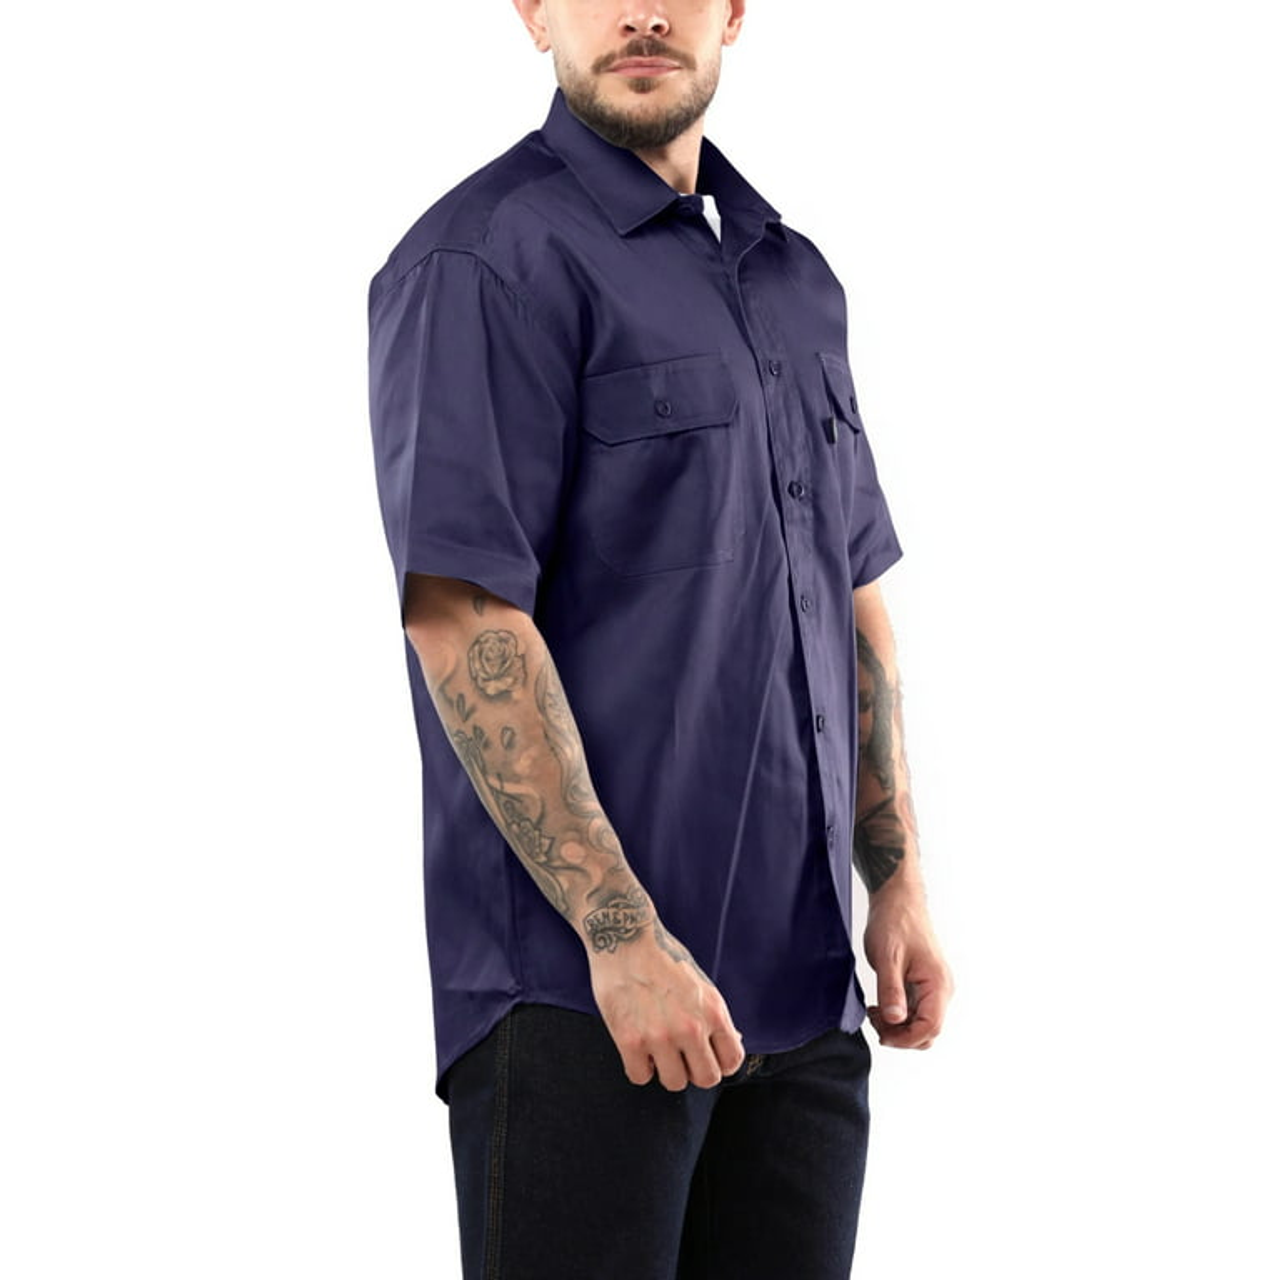 Kolossus Men's Lightweight Cotton Blend Long Sleeve Work Shirt with Pockets